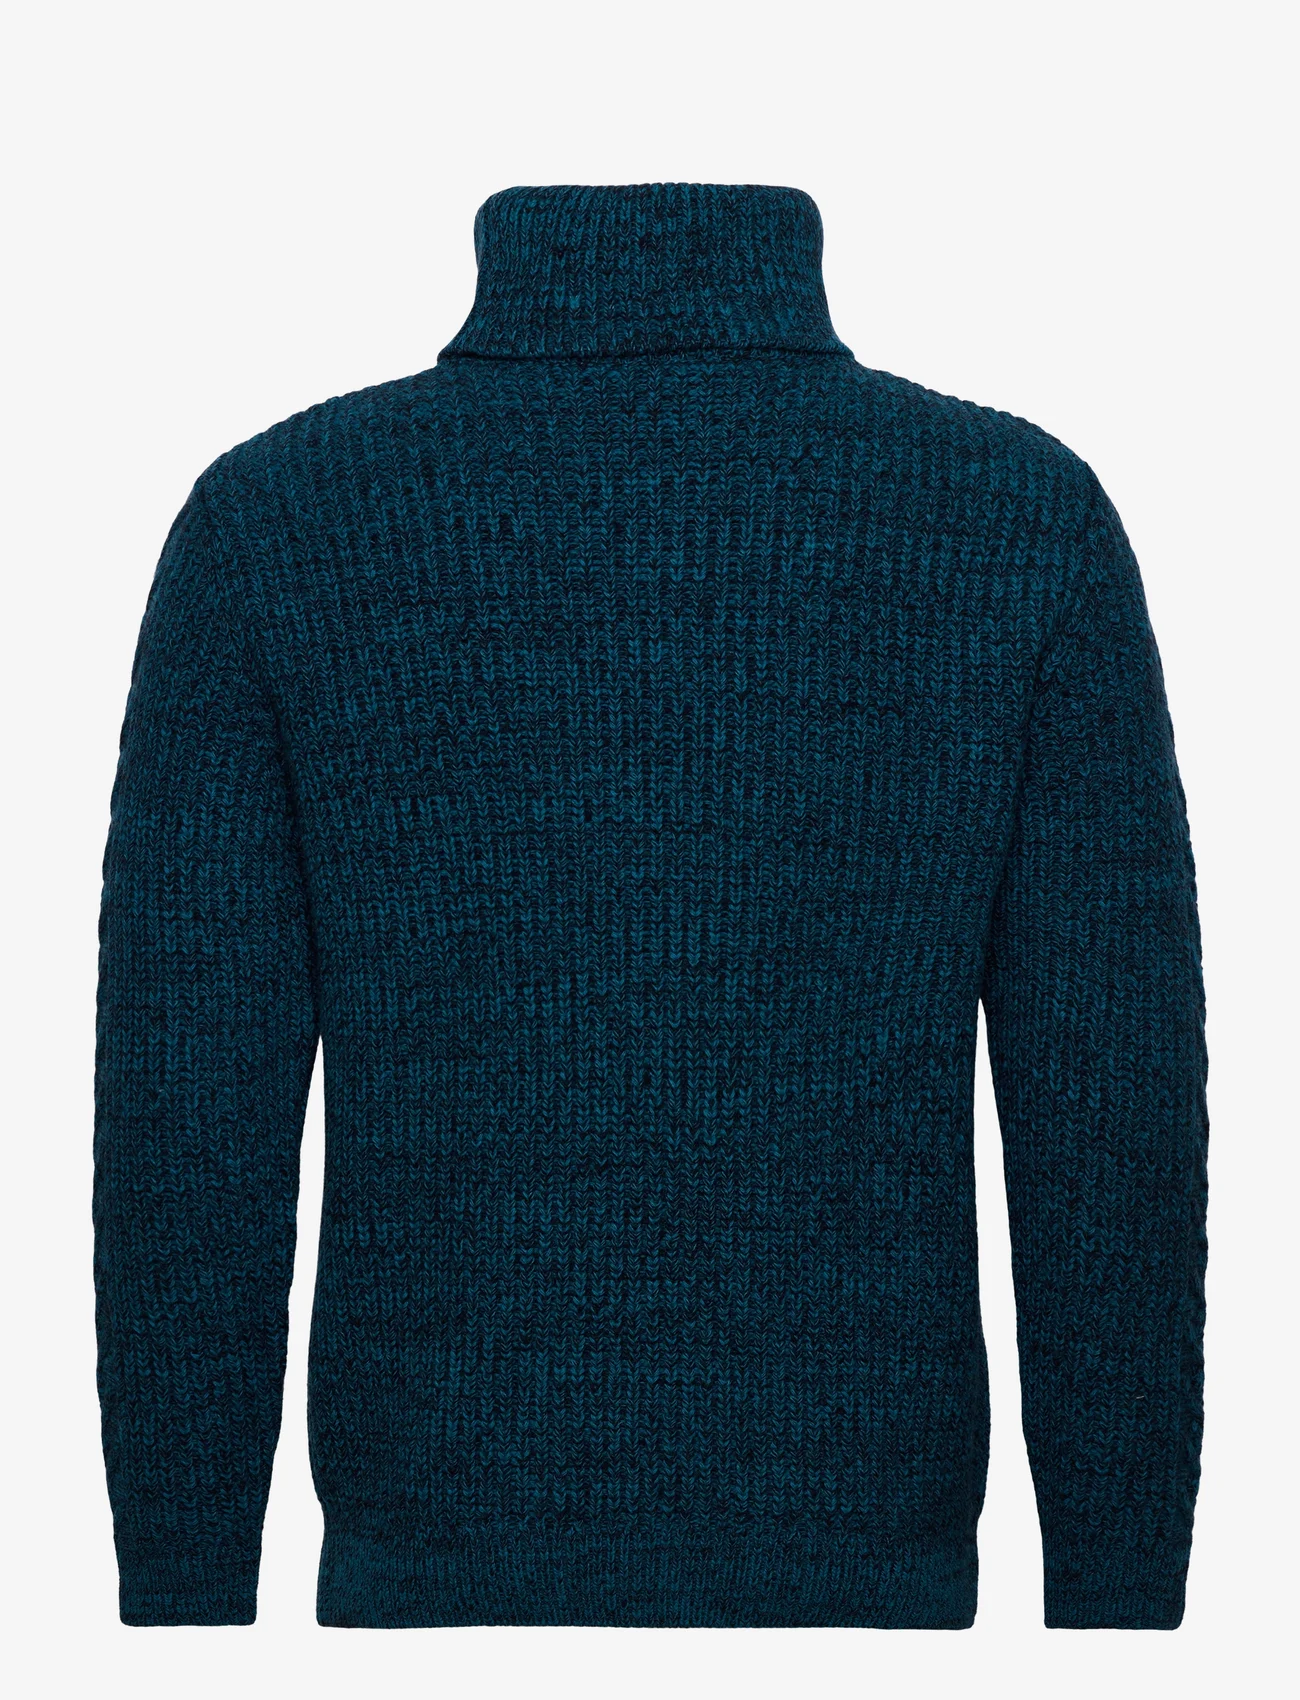 Armor Lux - Turtle neck Sweater Héritage - kõrge kaelusega džemprid - moulinÉ bleu glacial - 1